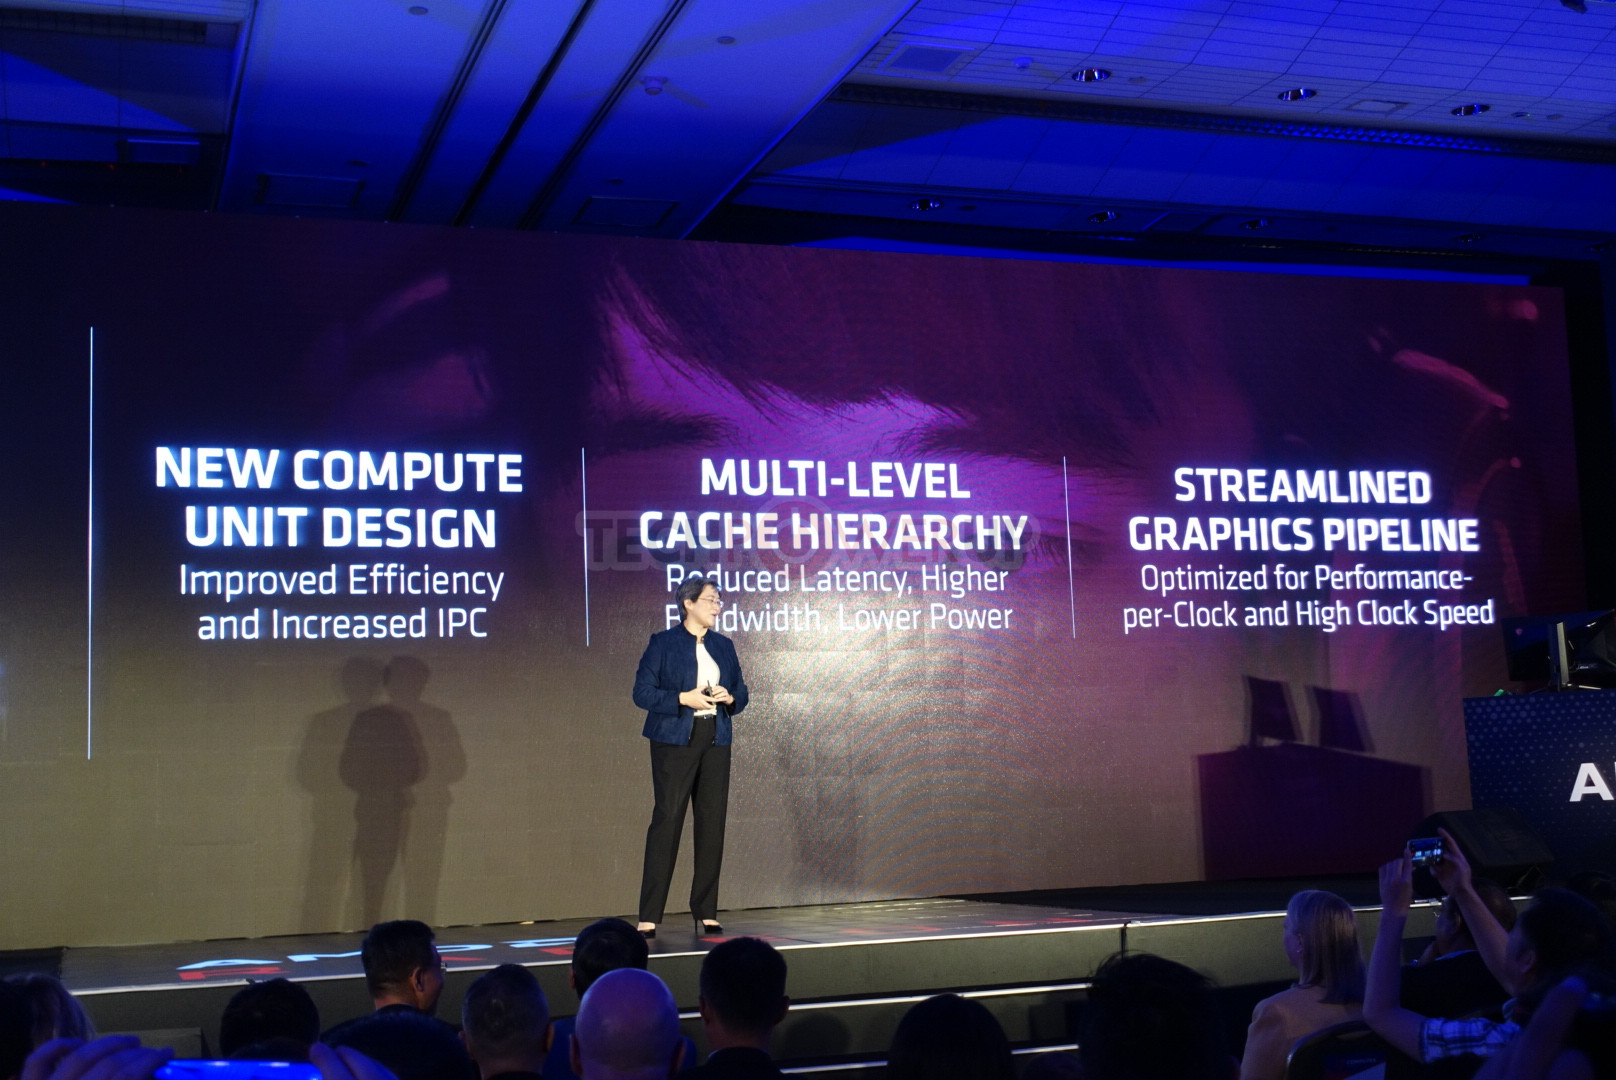 Samsung licențiază arhitectura GPU RDNA de la AMD, poate fi utilizată în viitoarele SoC Exynos